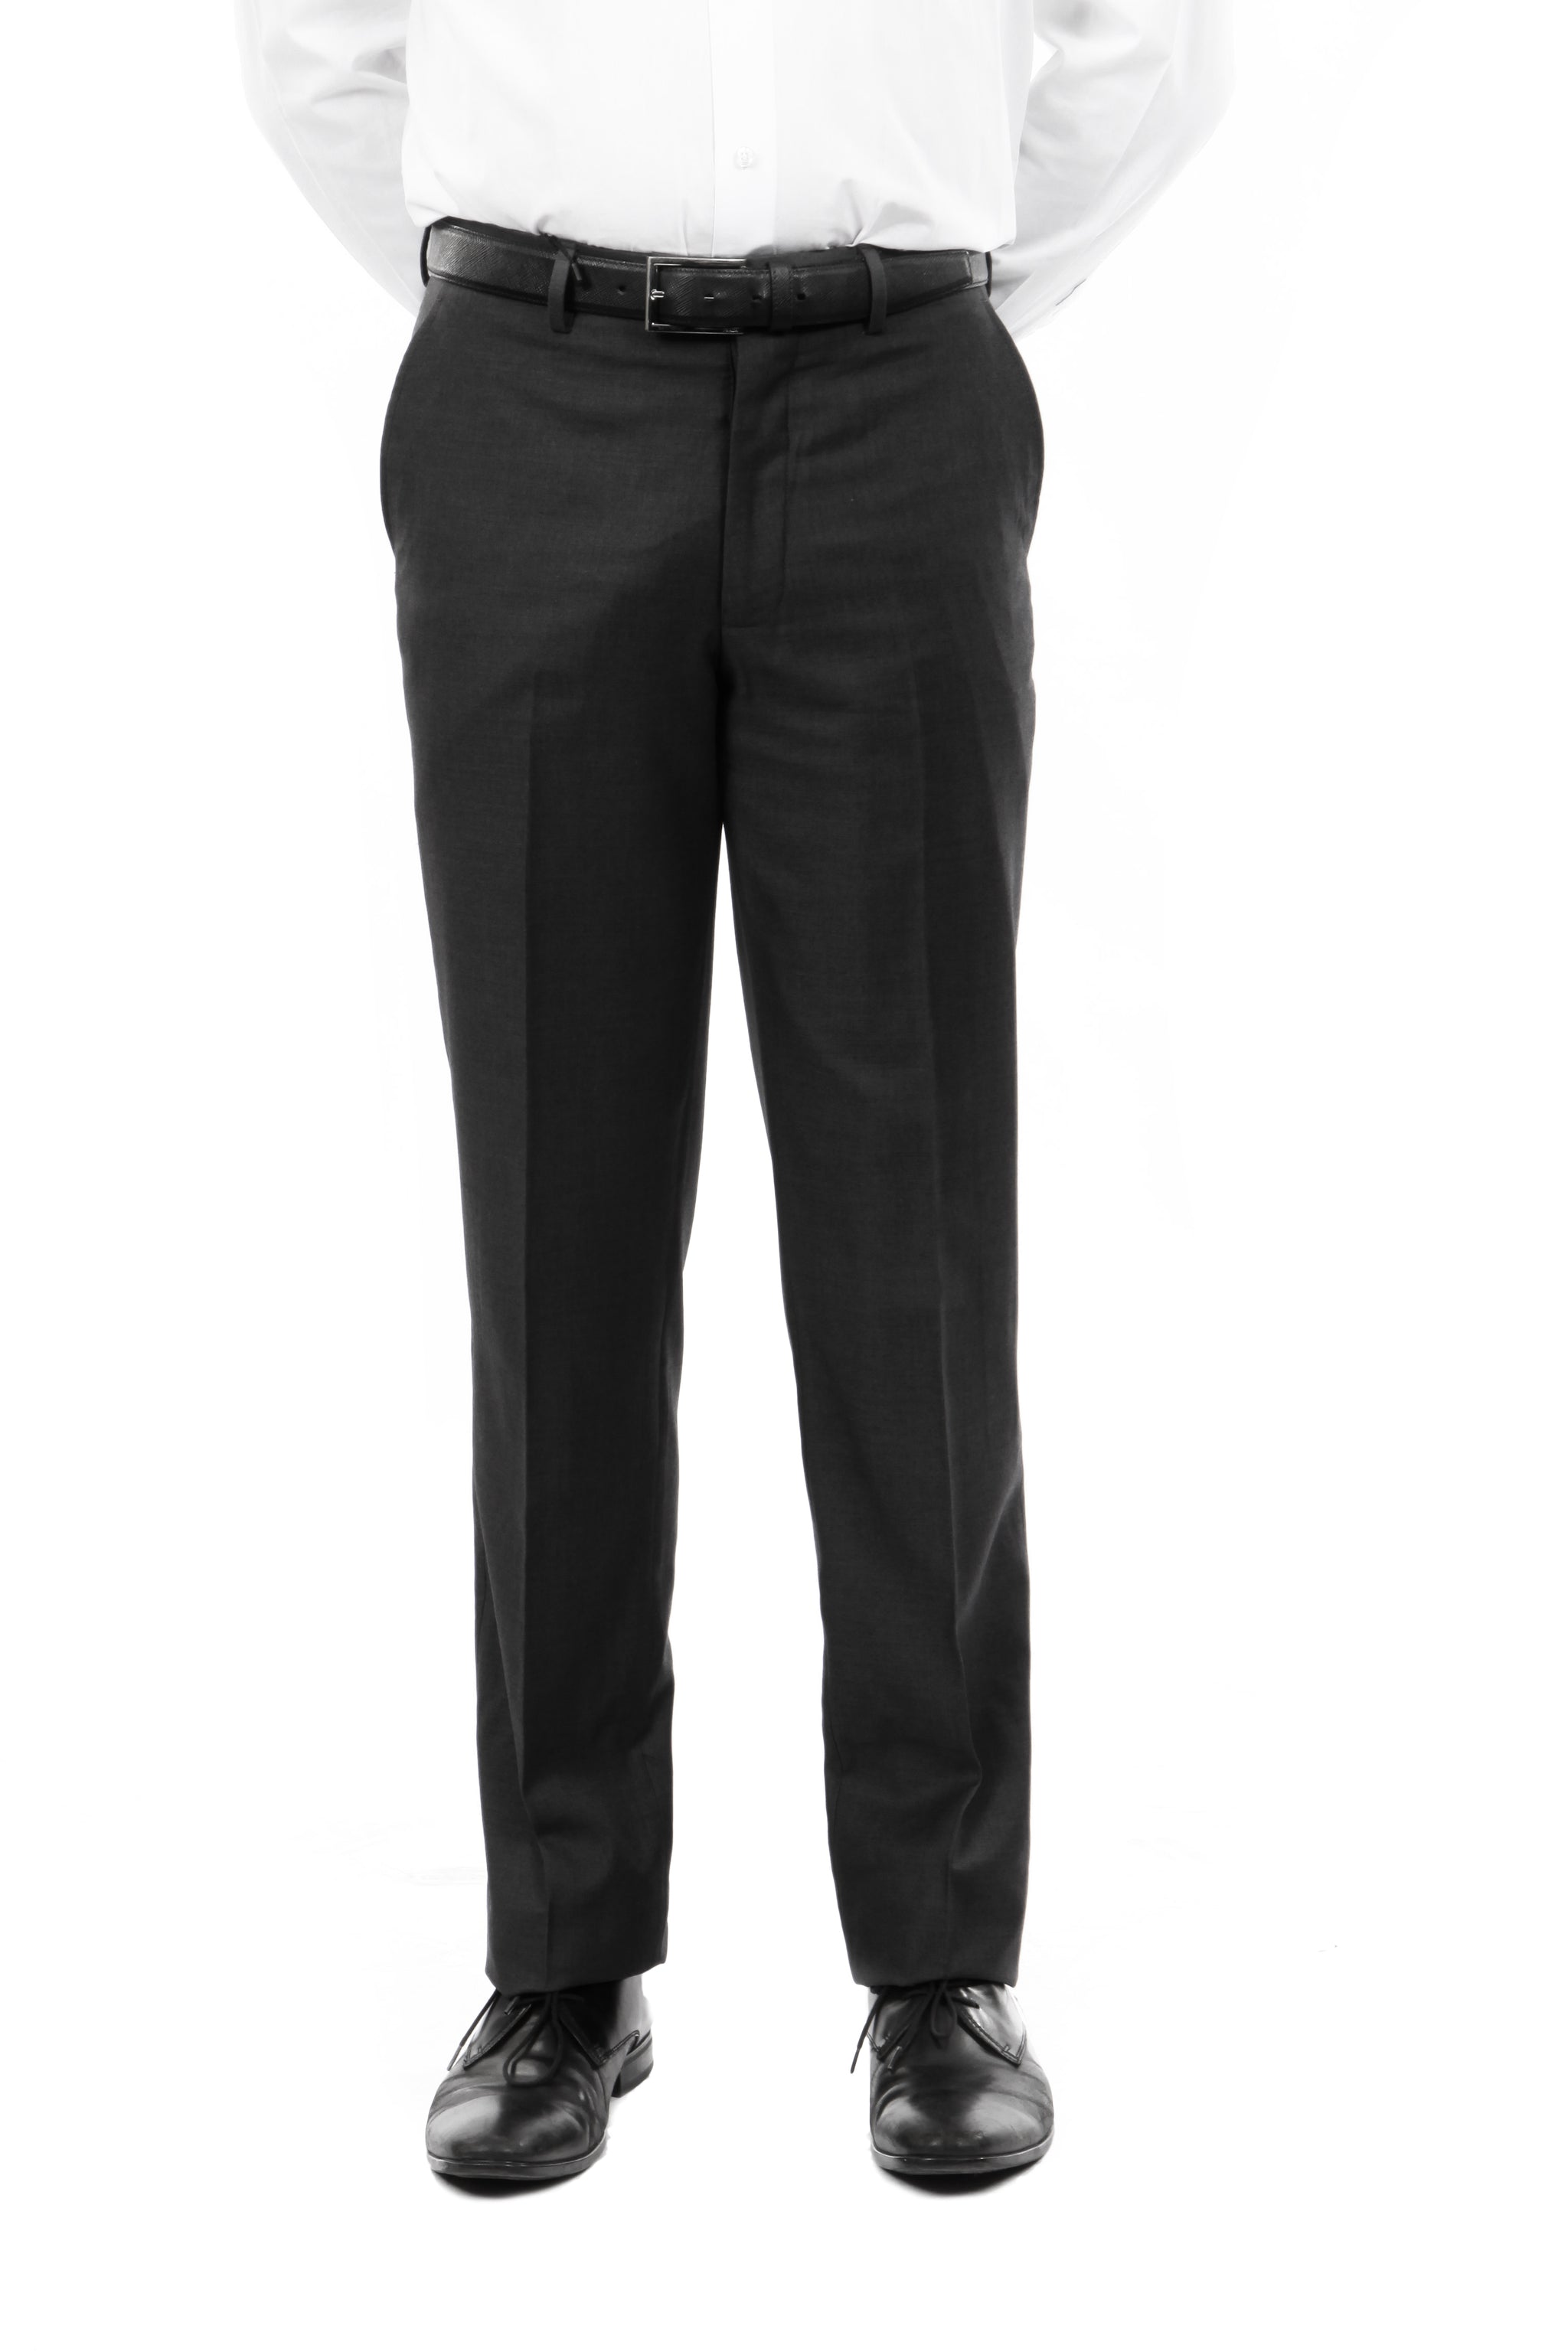 Tazio Black Slim Fit Stretch Dress Pants For Men - Franky Fashion